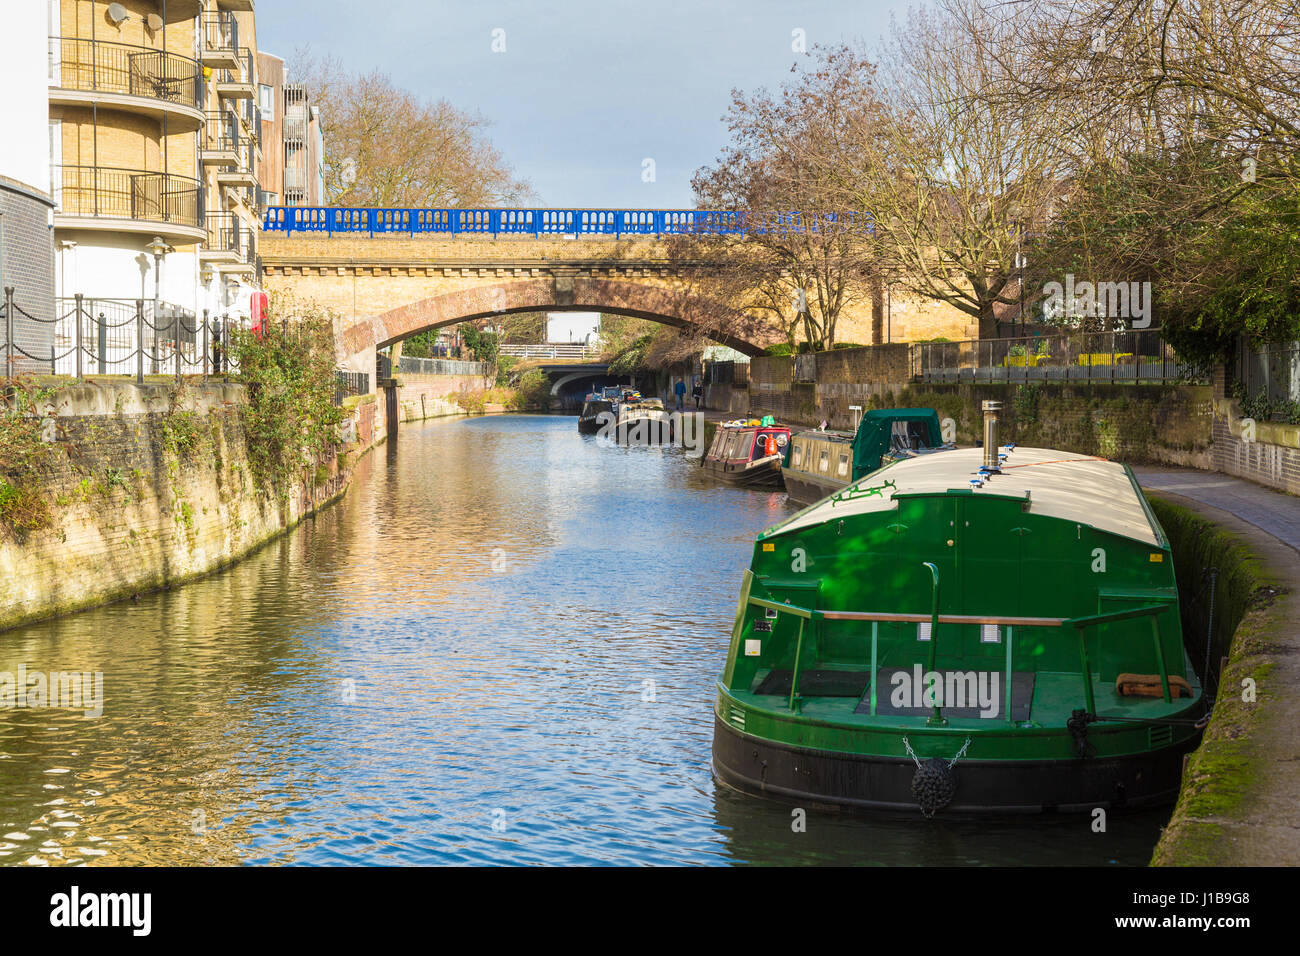 Péniches bateaux le long du canal canal Limehouse Cut dans les Docklands, l'East End de Londres, Angleterre Banque D'Images